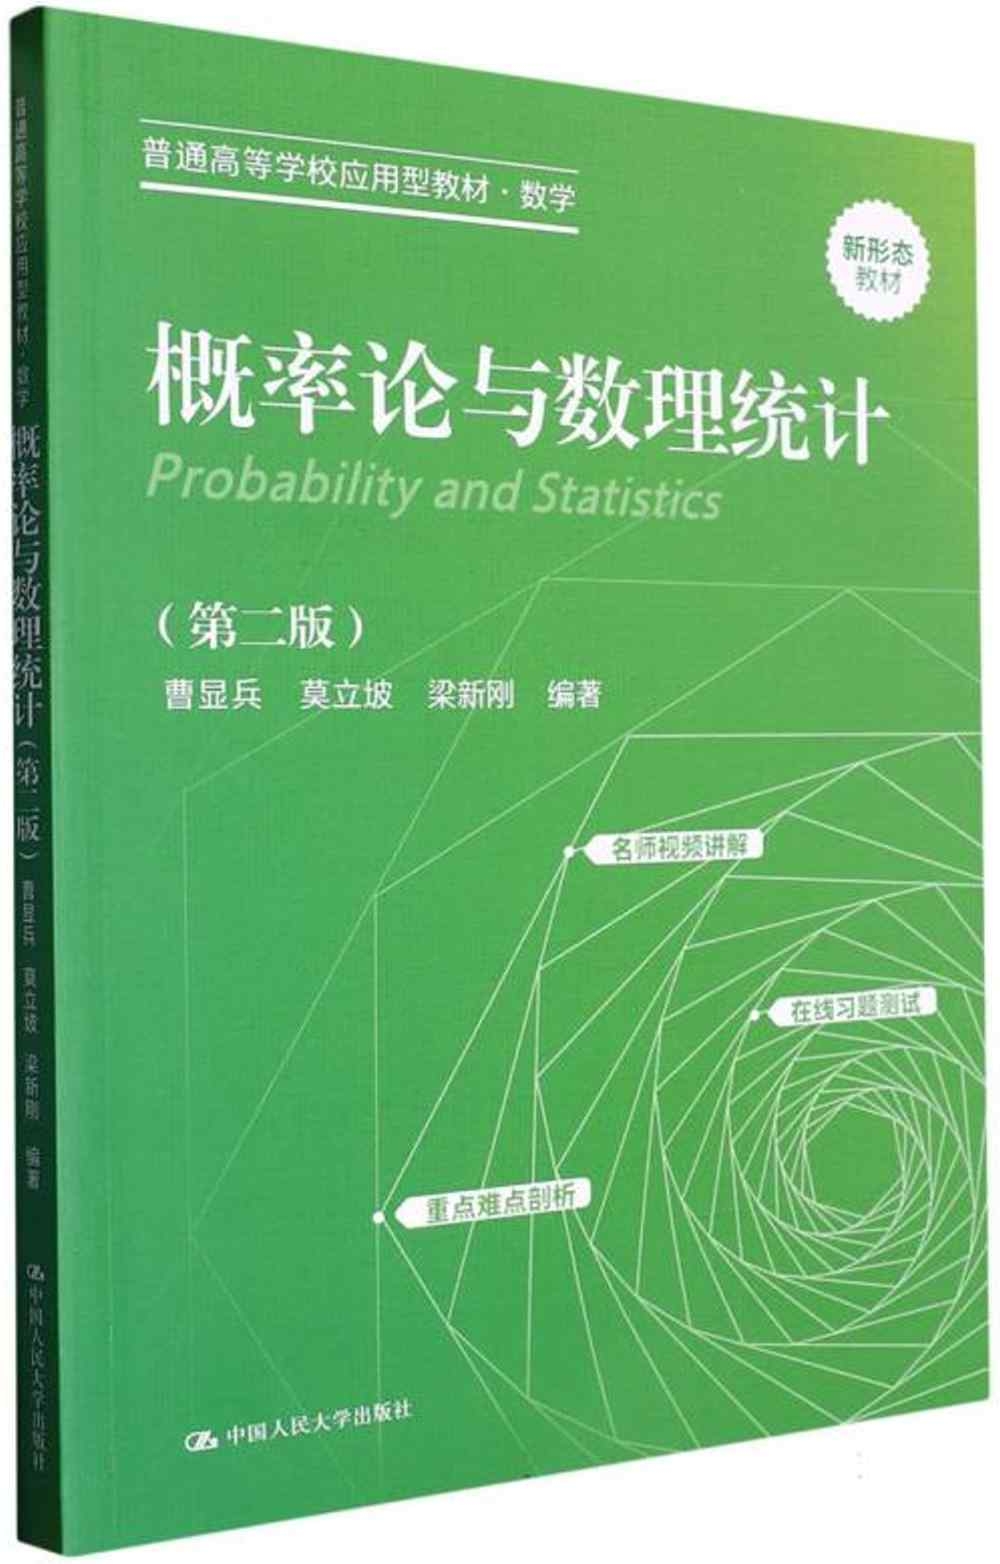 概率論與數理統計(第二版)